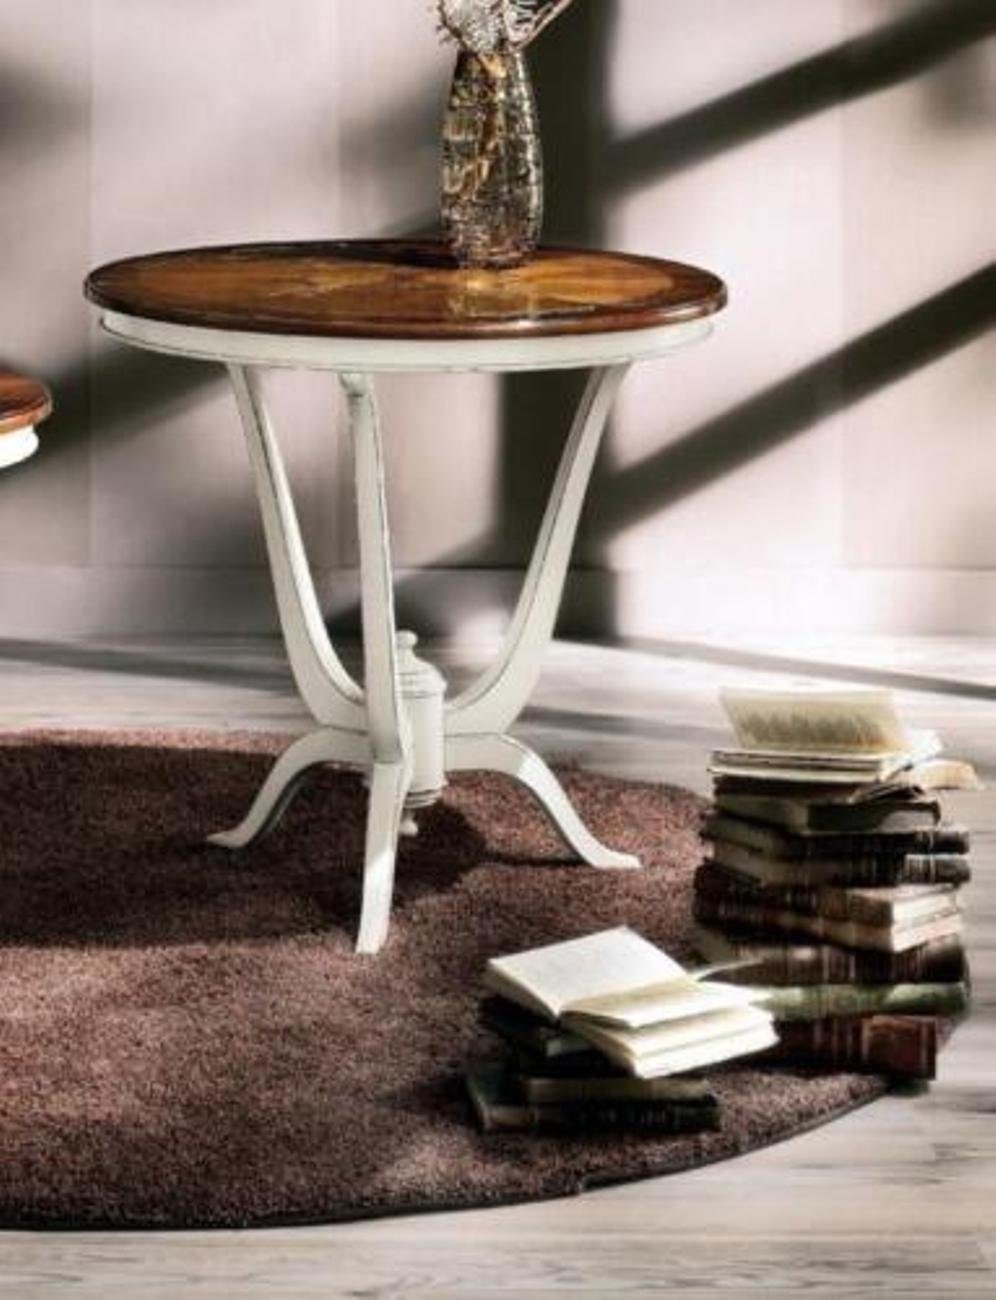 JVmoebel Beistelltisch (Beistelltisch), Beistelltisch Kaffeetisch Design Tisch Wohnzimmertisch Tische